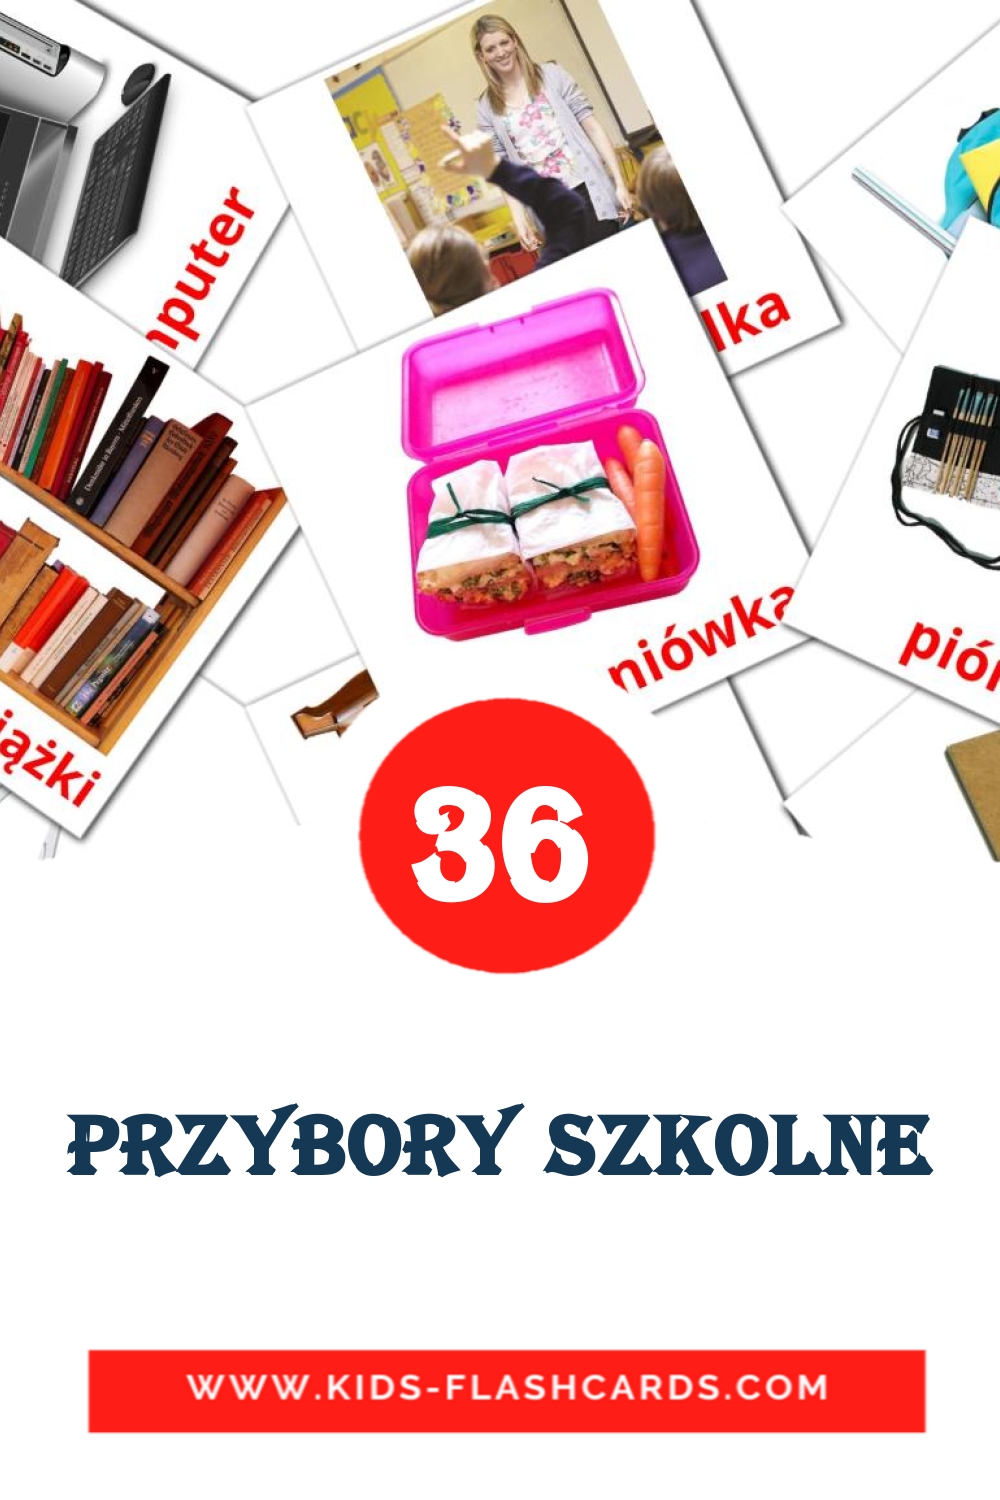 36 carte illustrate di Przybory szkolne per la scuola materna in polacco